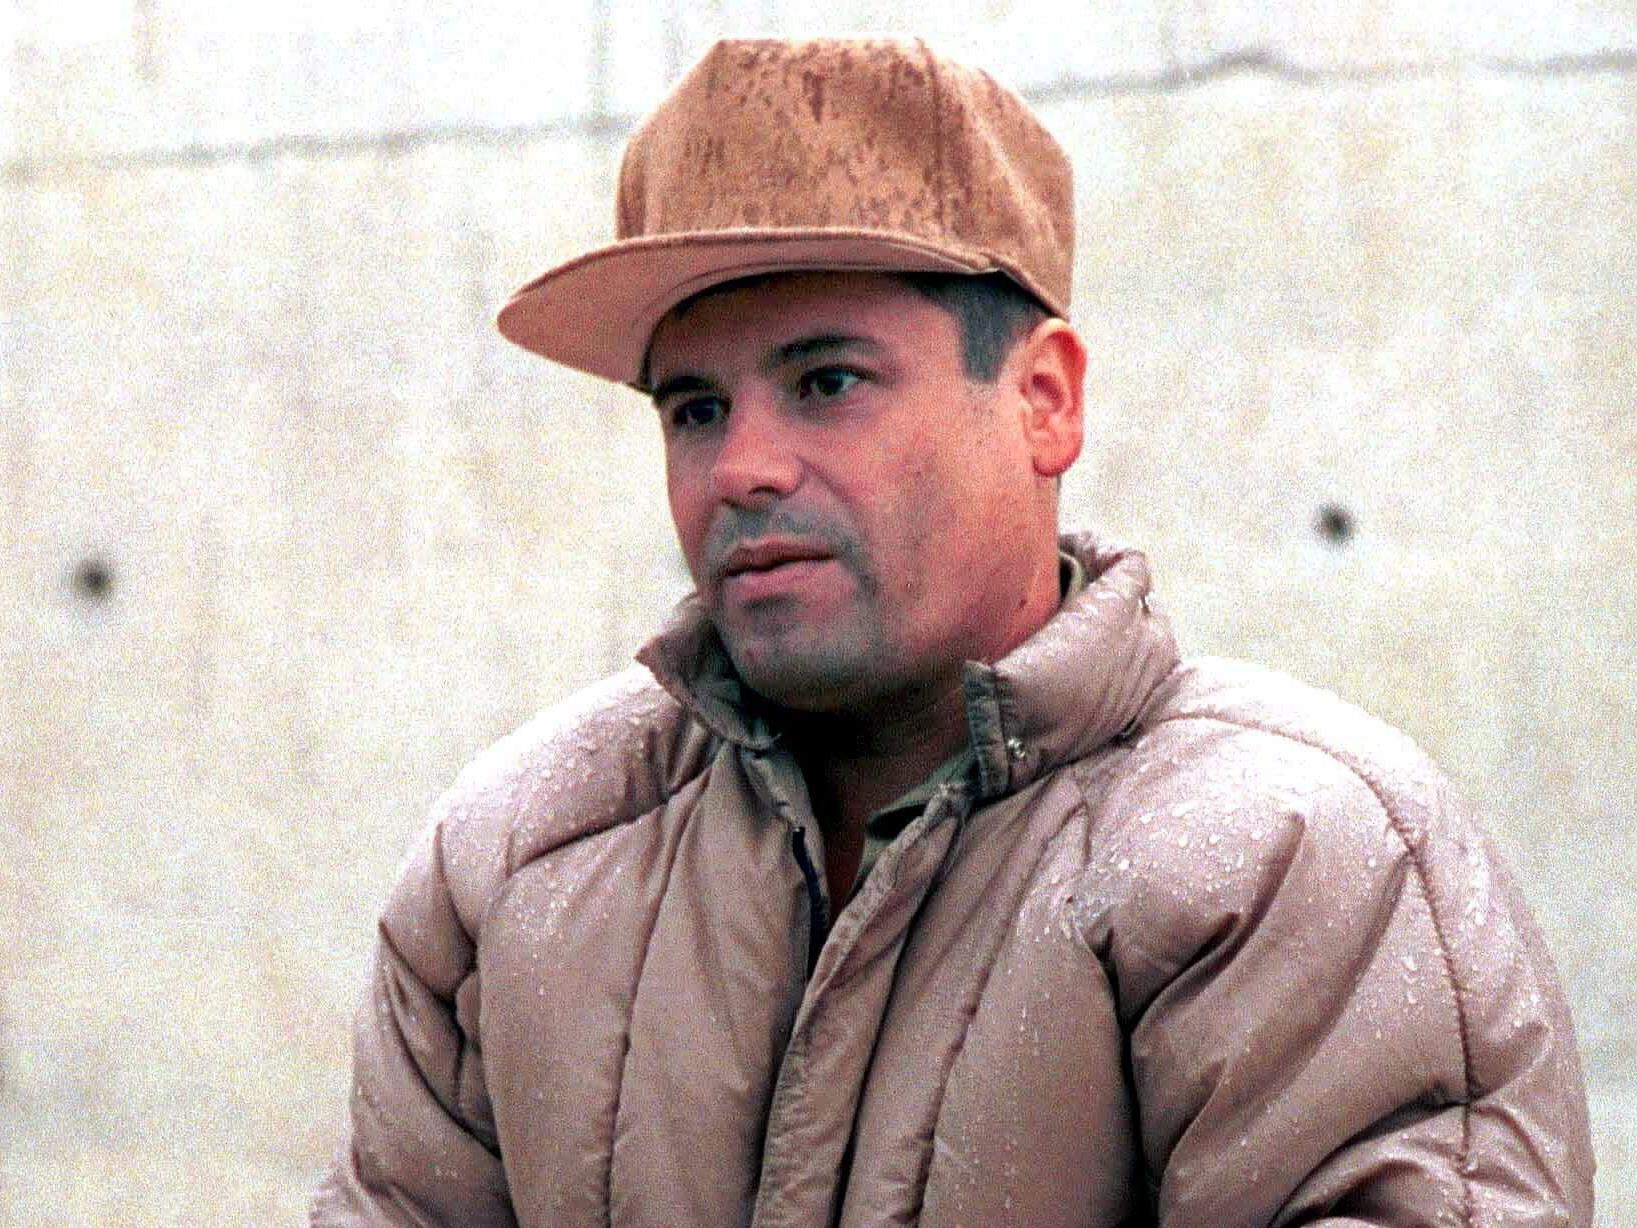 Drogenboss “El Chapo” Guzman wieder auf der Flucht - Welt -- VOL.AT